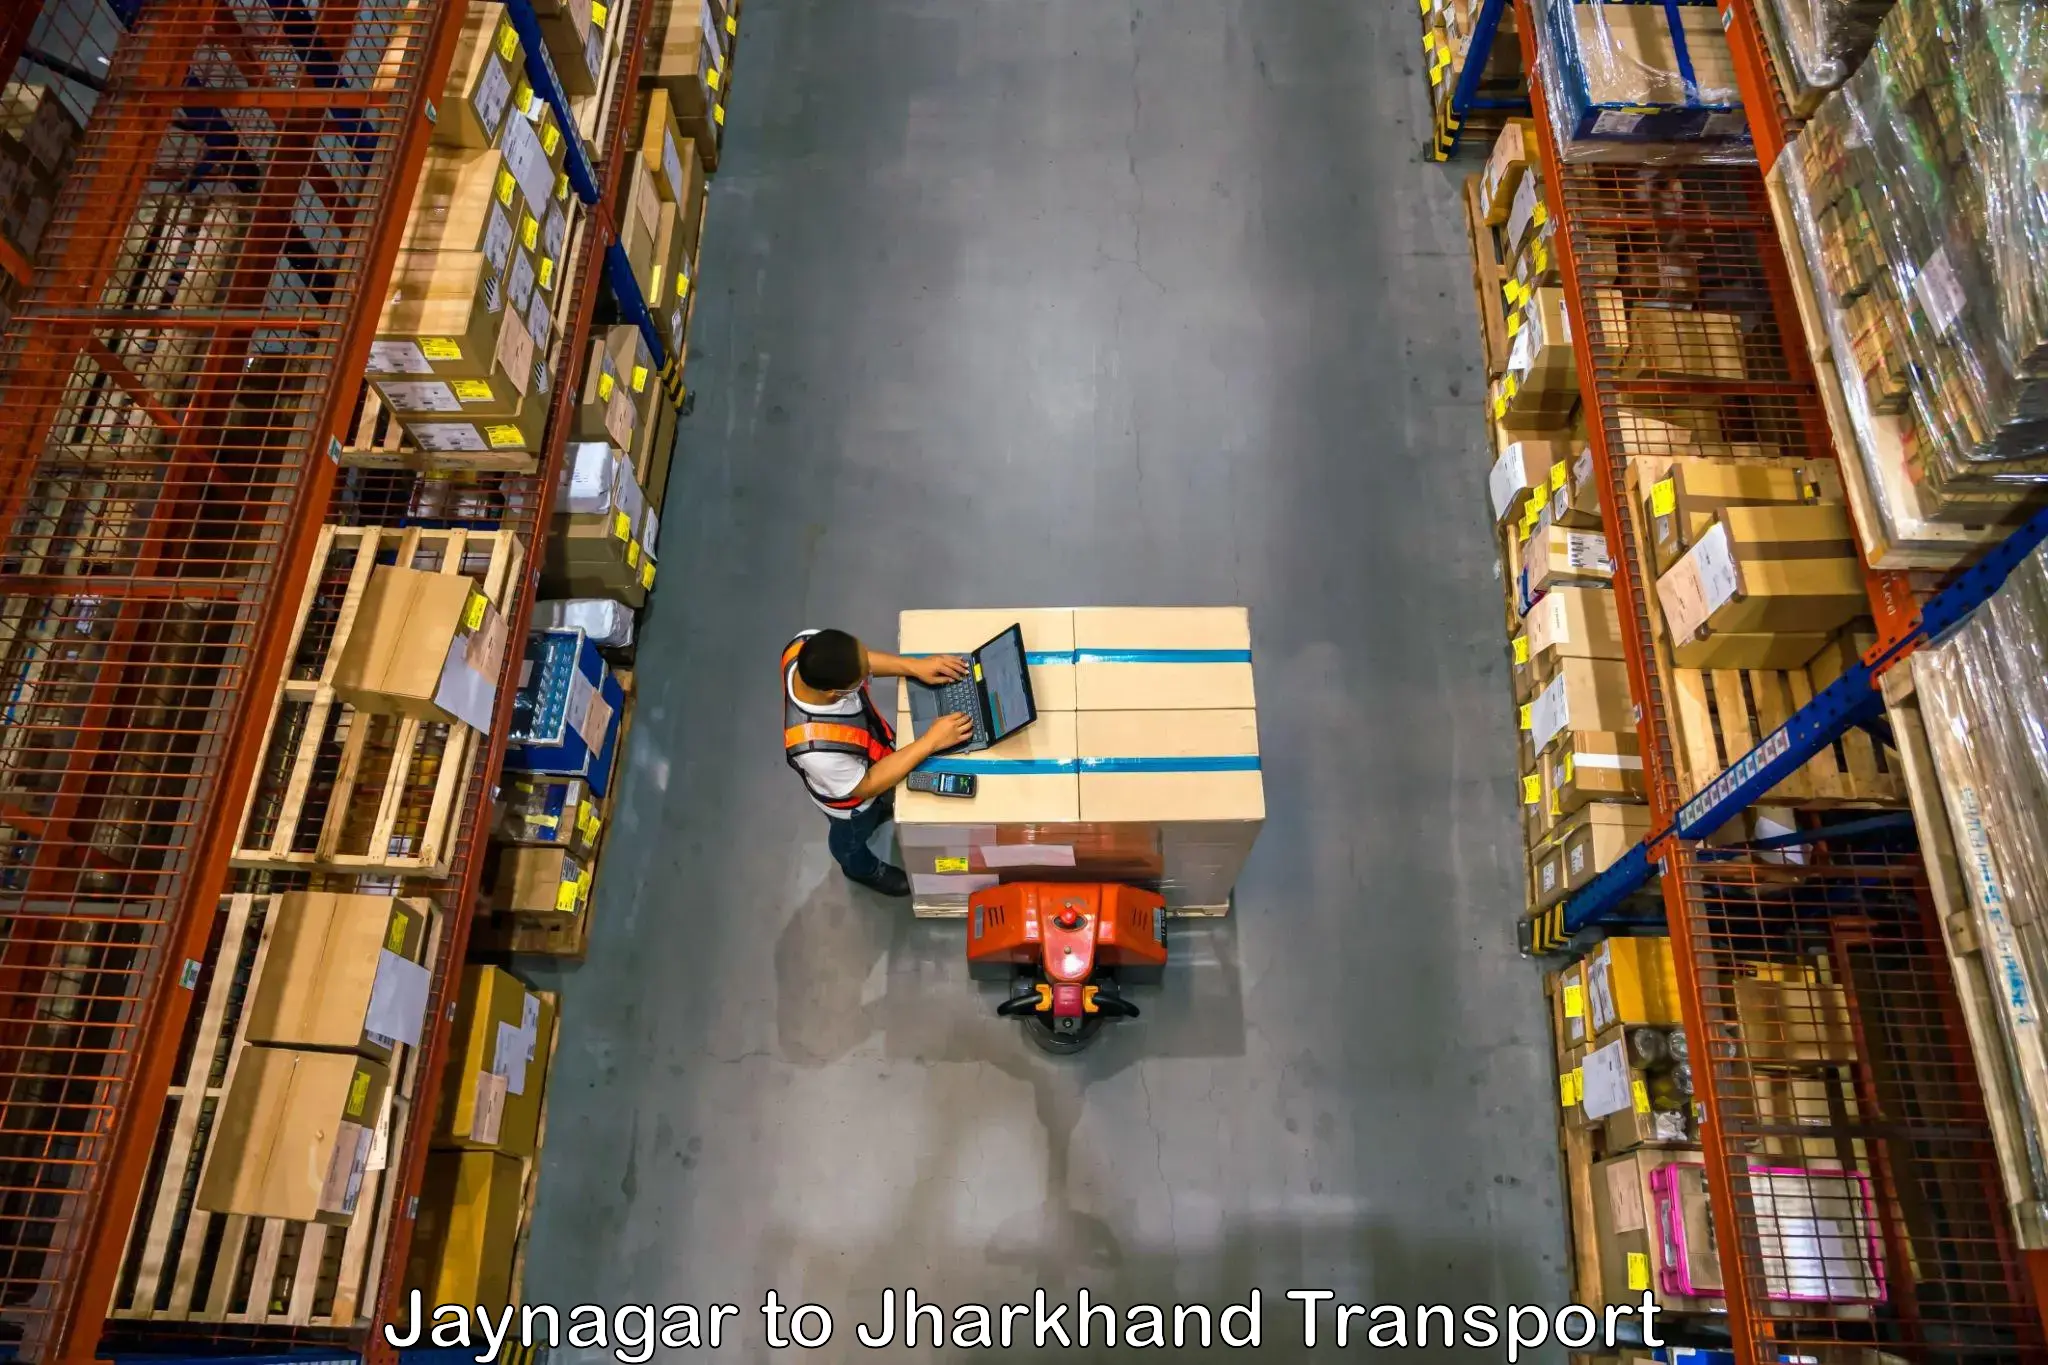 Shipping partner Jaynagar to Dhanbad